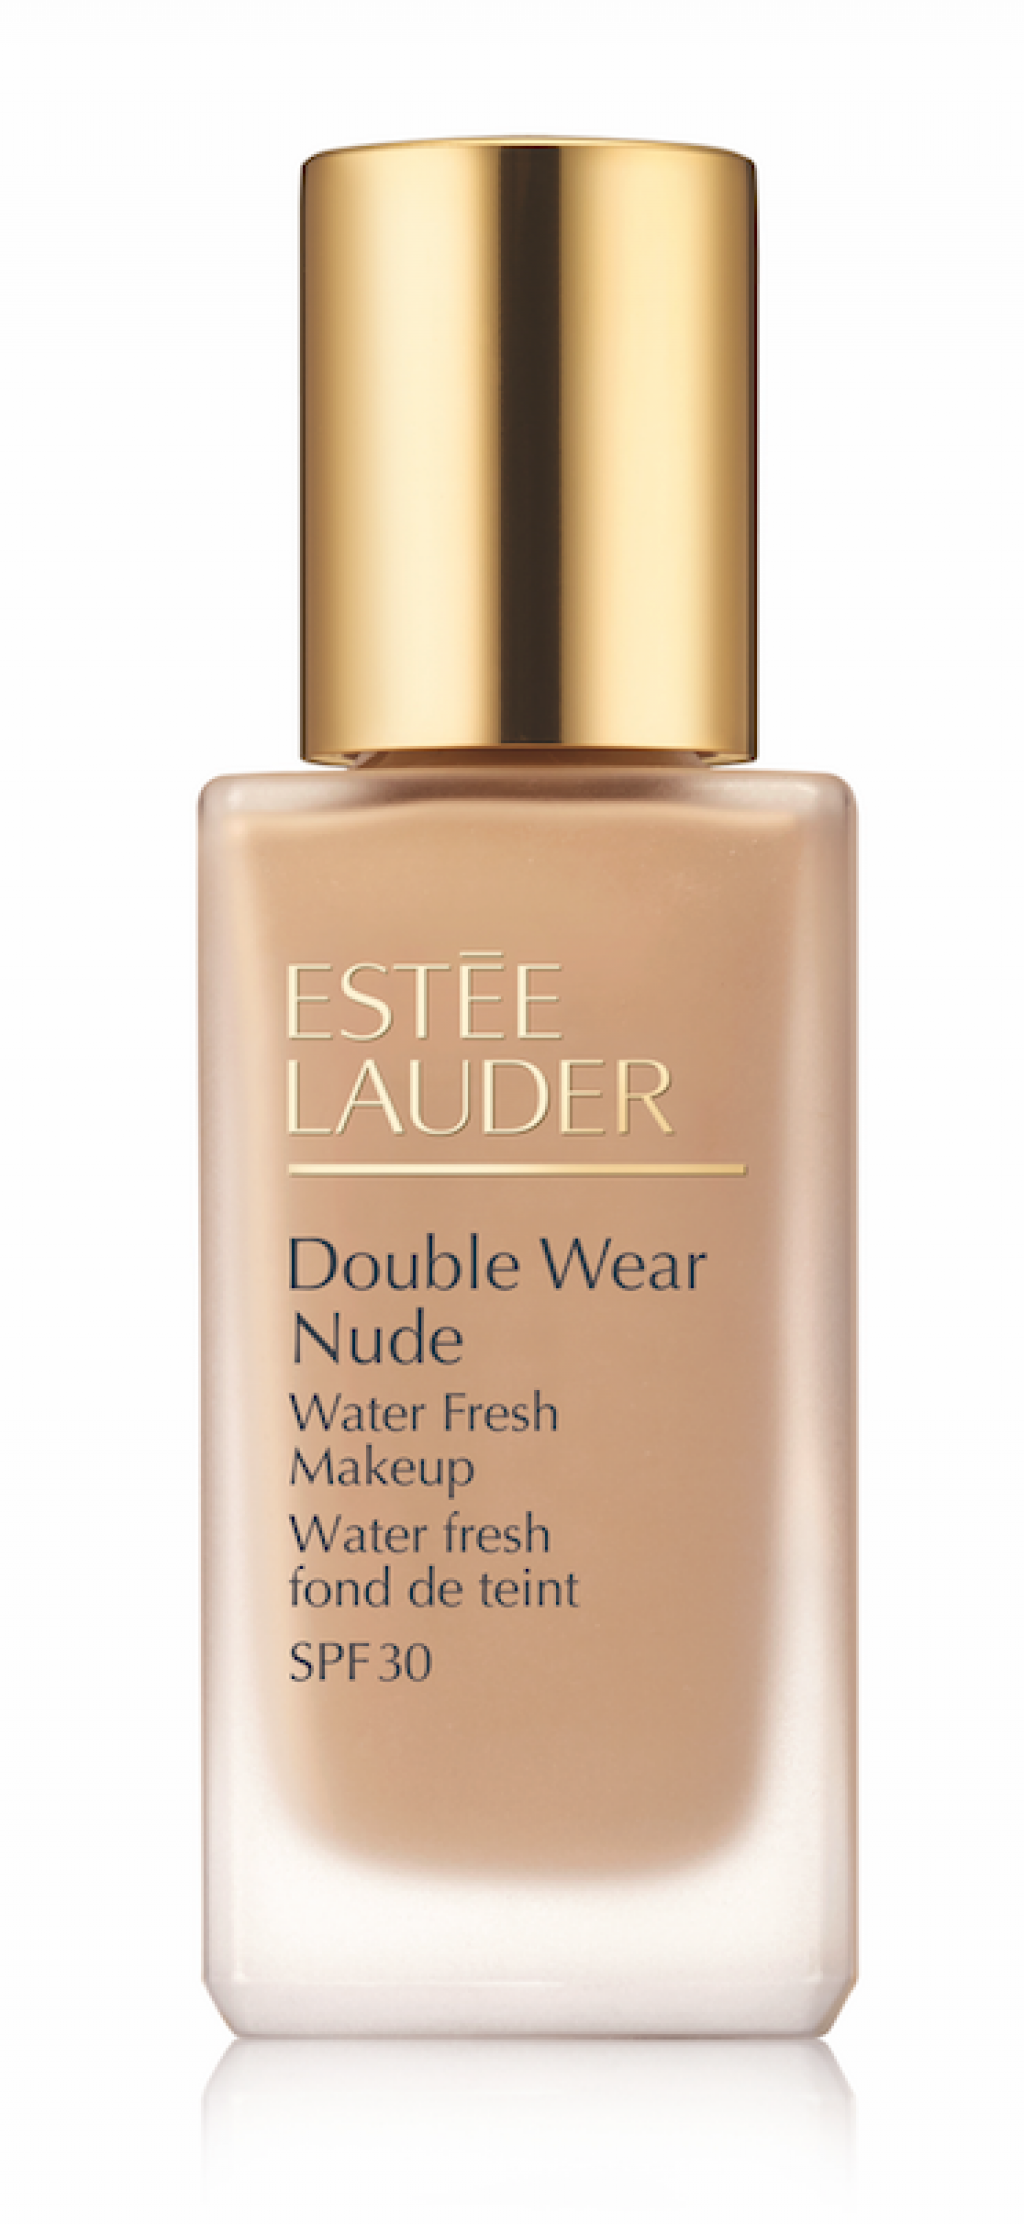 Estee Lauder Double Wear Nude Water Fresh Makeup Broad 